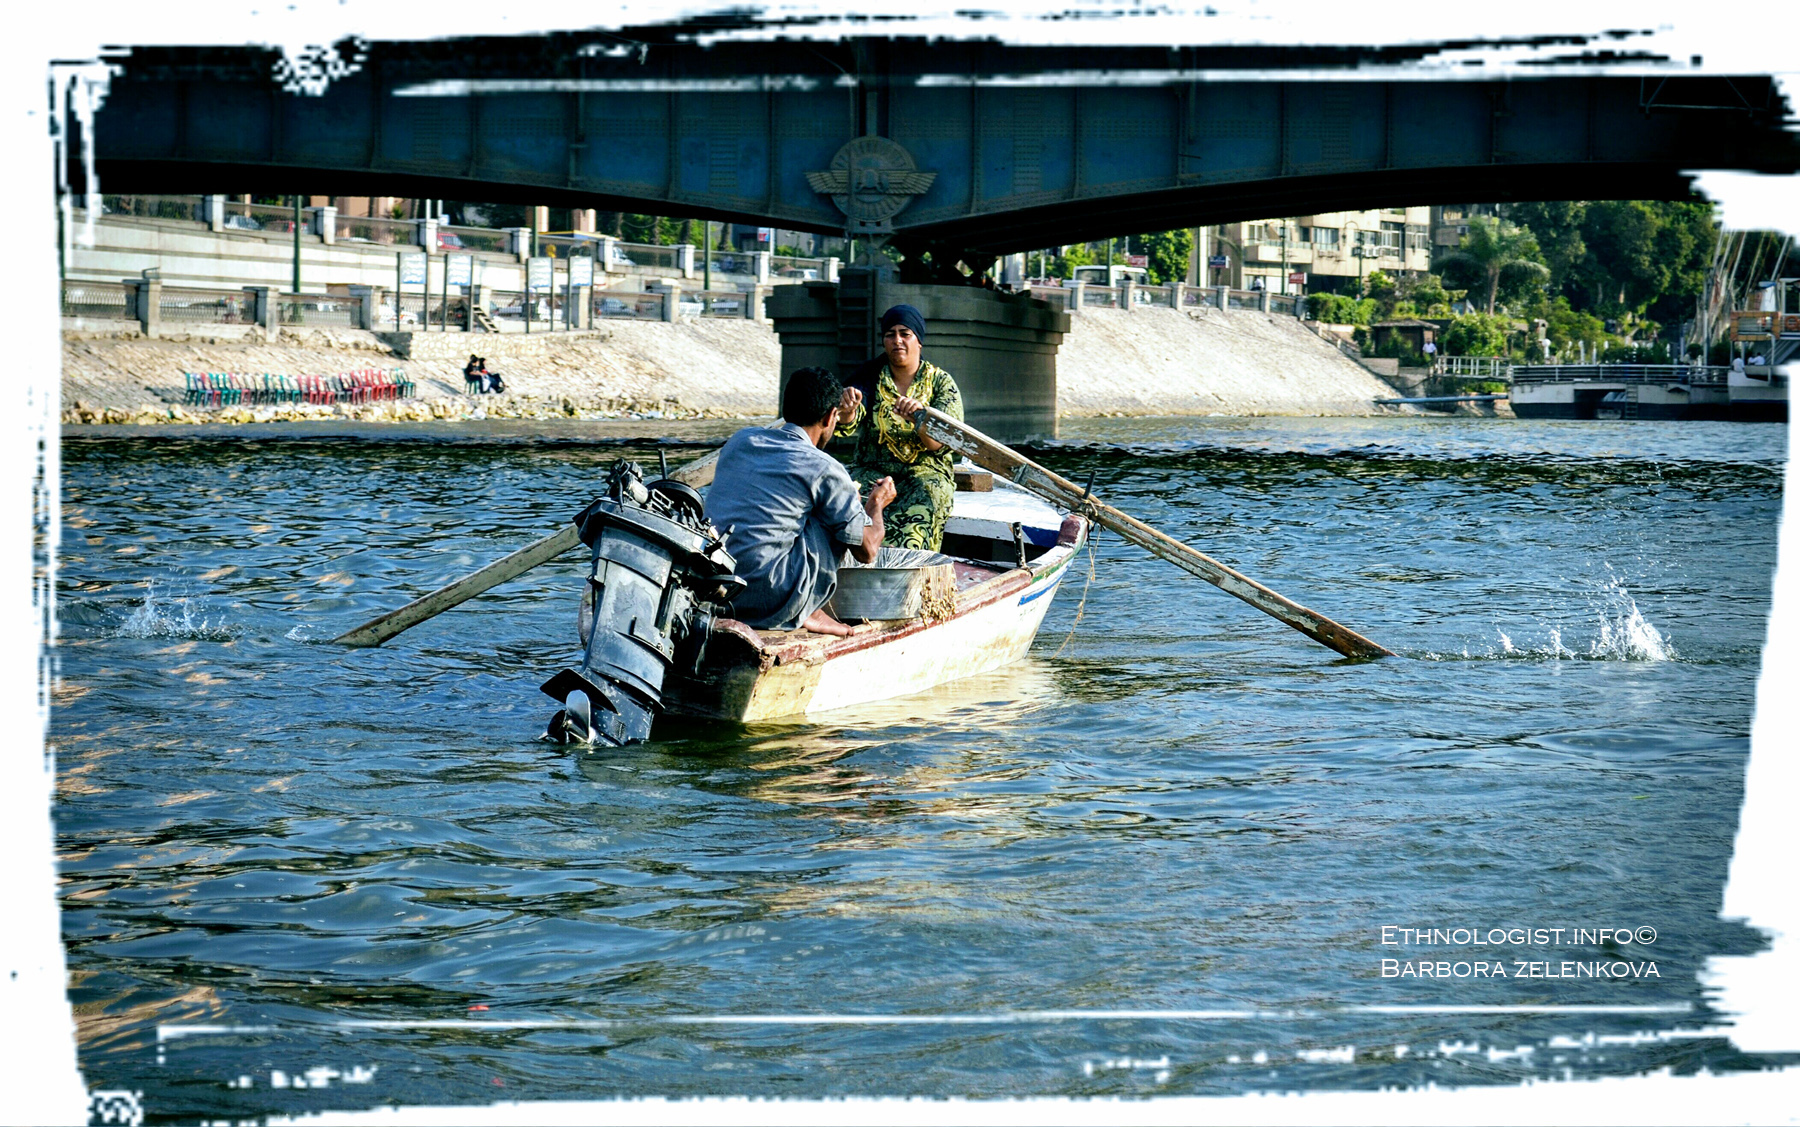 Rybářka s rybářem na řece Nil. Foto: Barbora Zelenková, 2011.